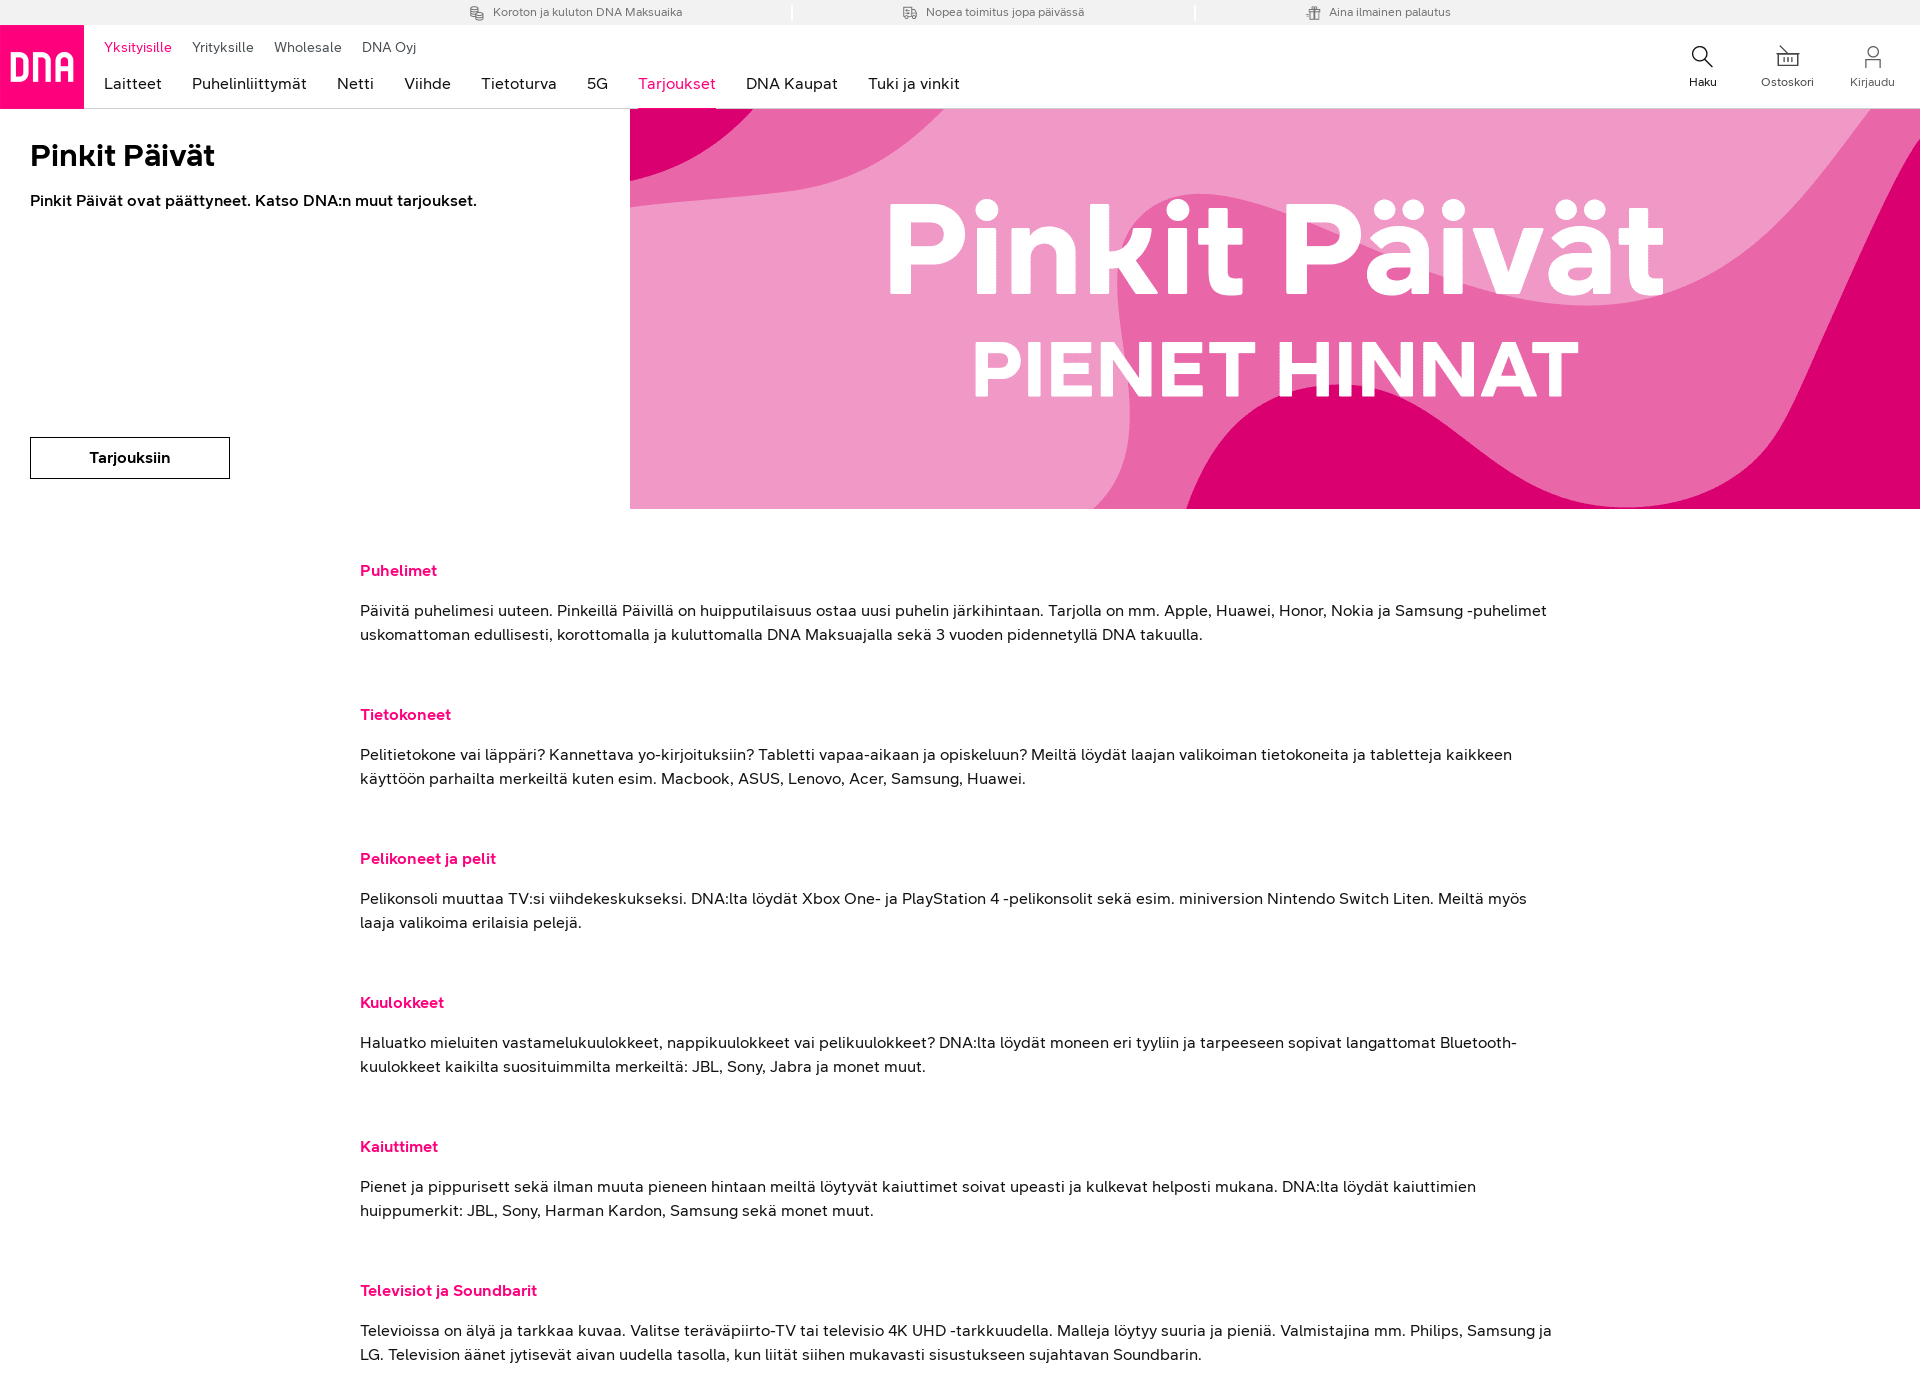 Näyttökuva pinkitpaivat.fi